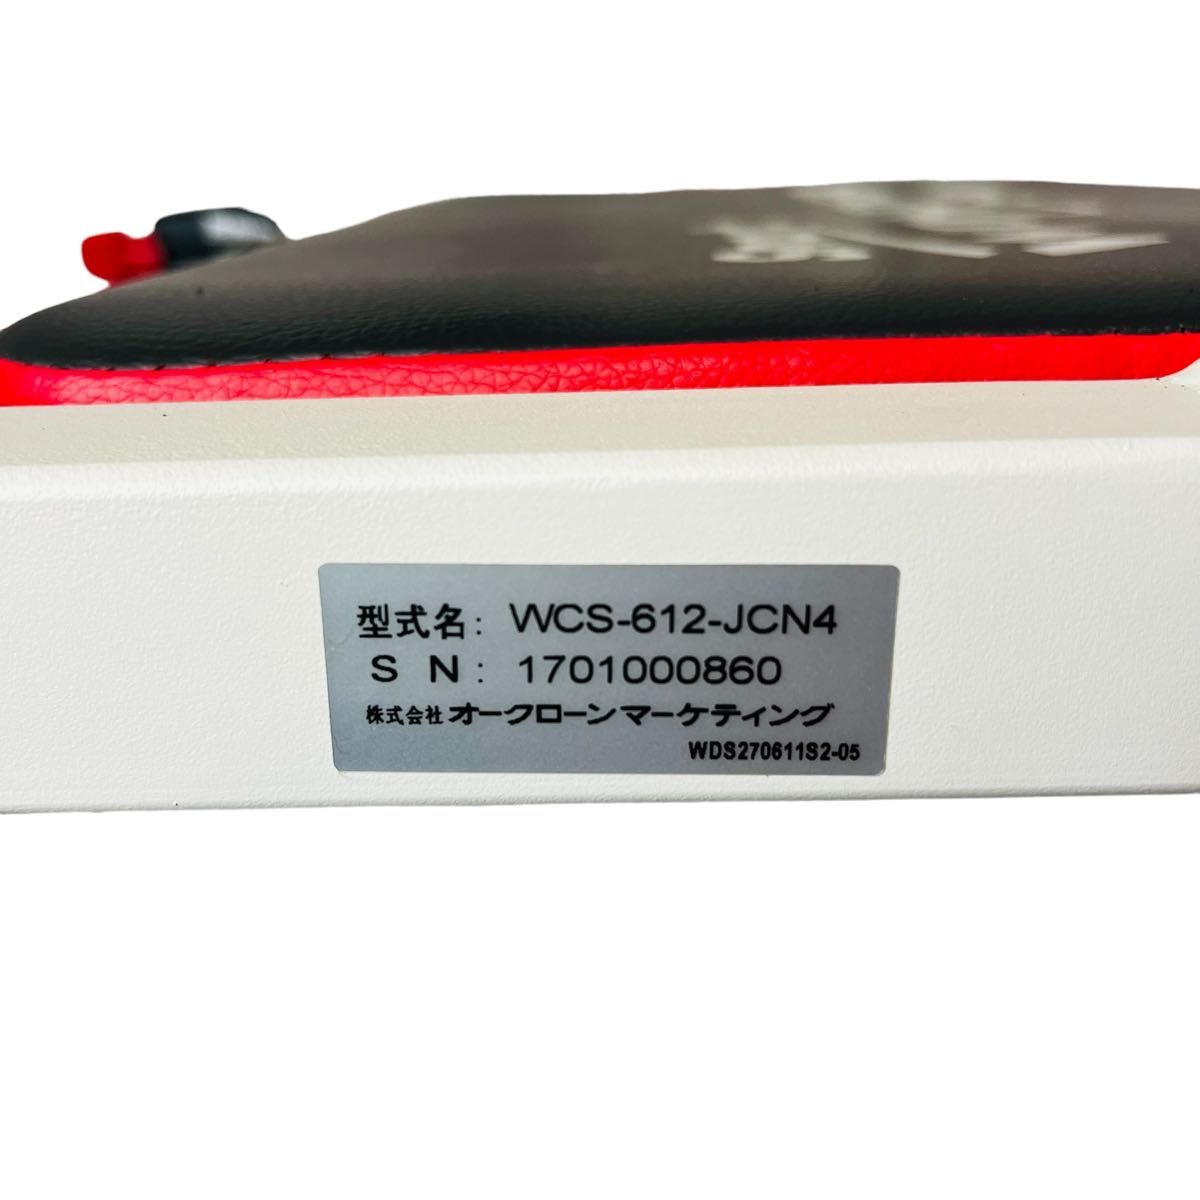 ワンダーコア スマート レッド ショップジャパン 腹筋トレーニングマシン 美品  WONDER Core Smart 筋トレ 腹筋